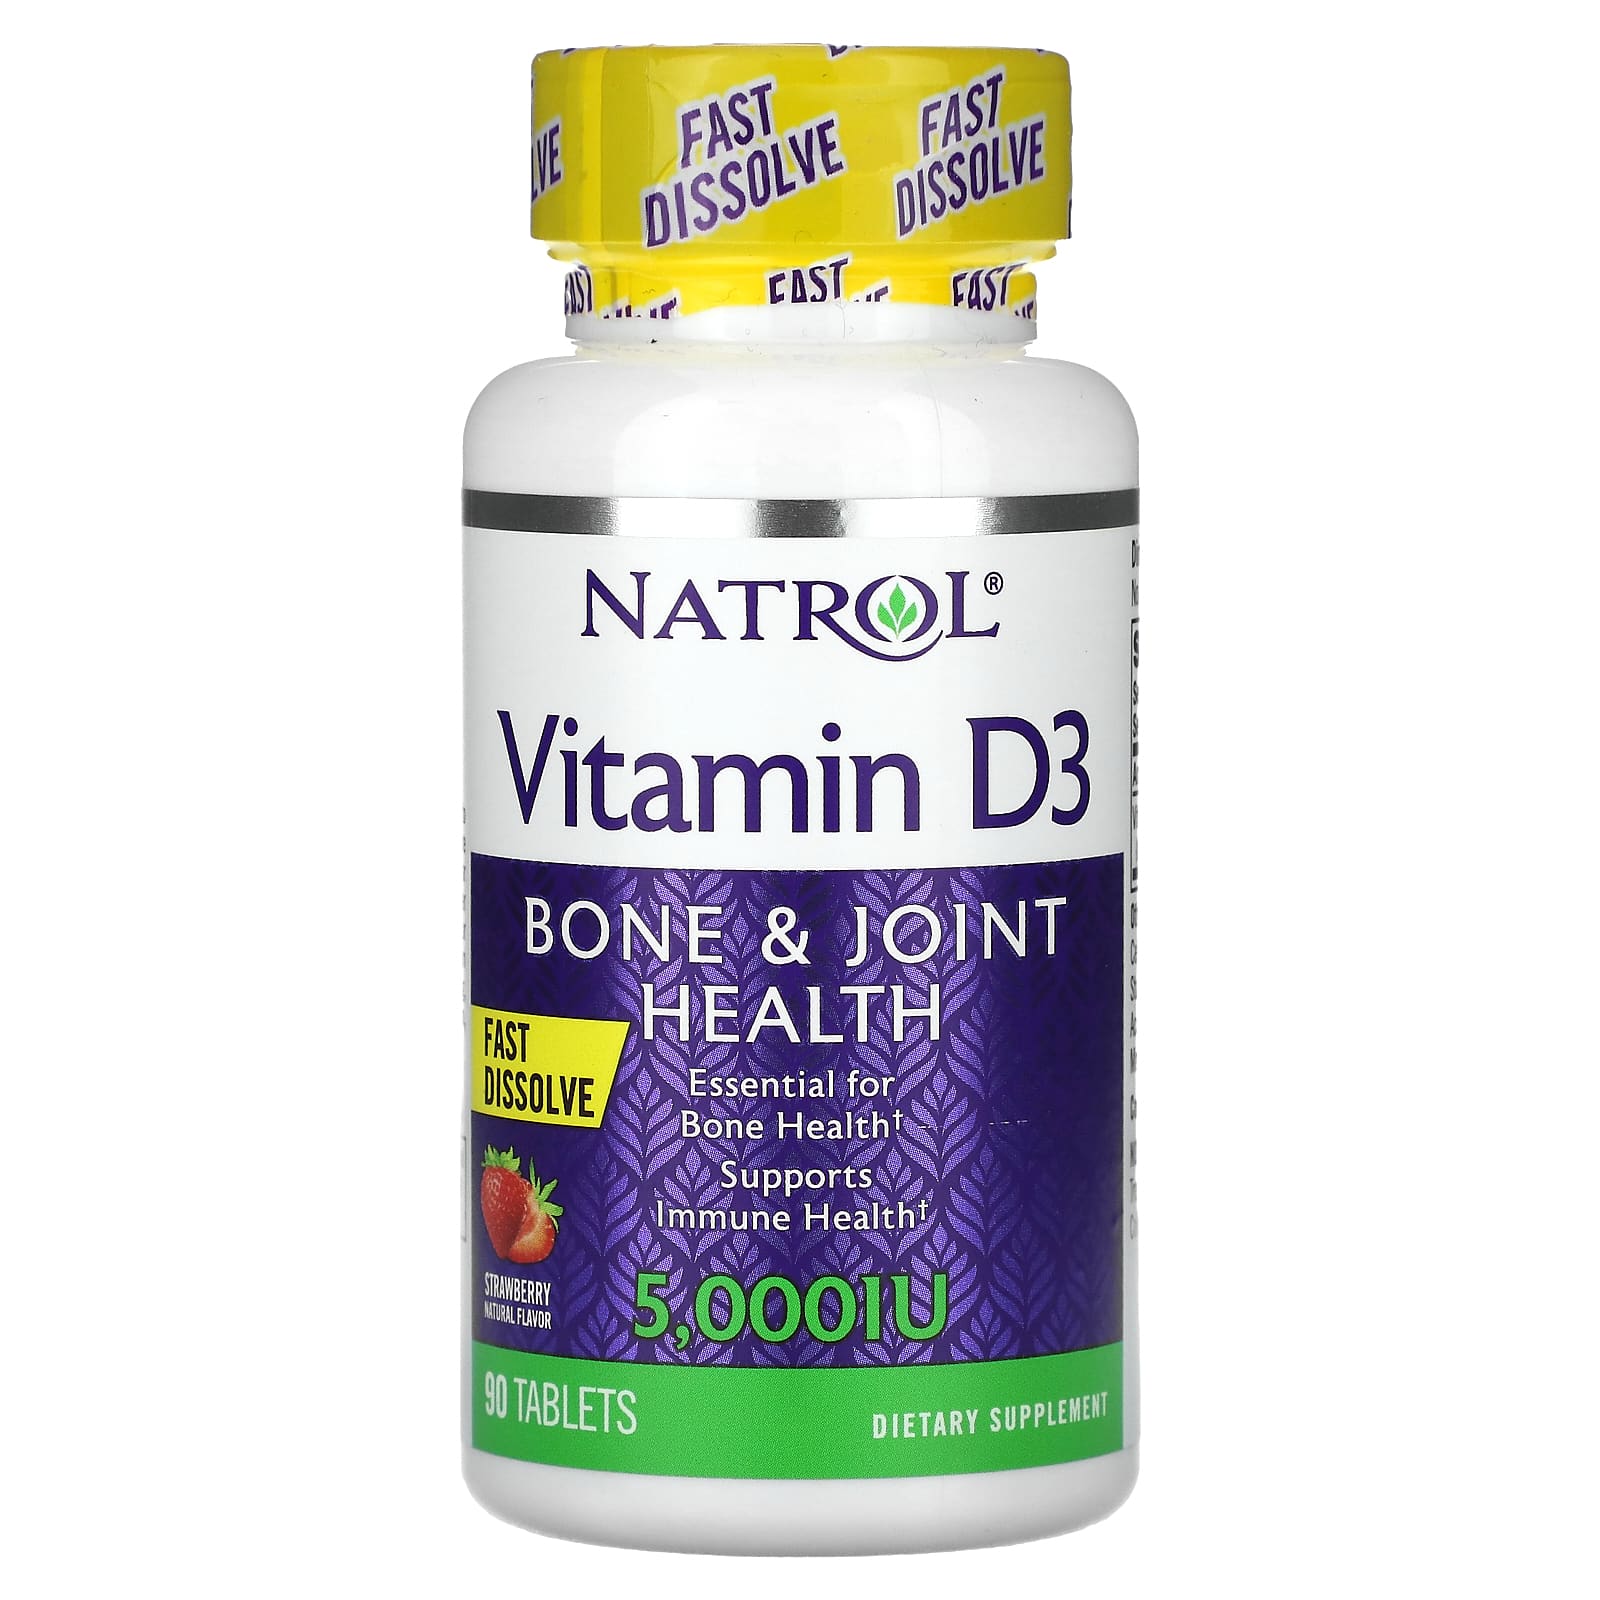 Natrol Витамин D3 быстрорастворимый со вкусом клубники 5000 МЕ 90 таблеток natrol комплекс витаминов группы b со вкусом кокоса быстрорастворимый 90 таблеток natrol мультивитамины